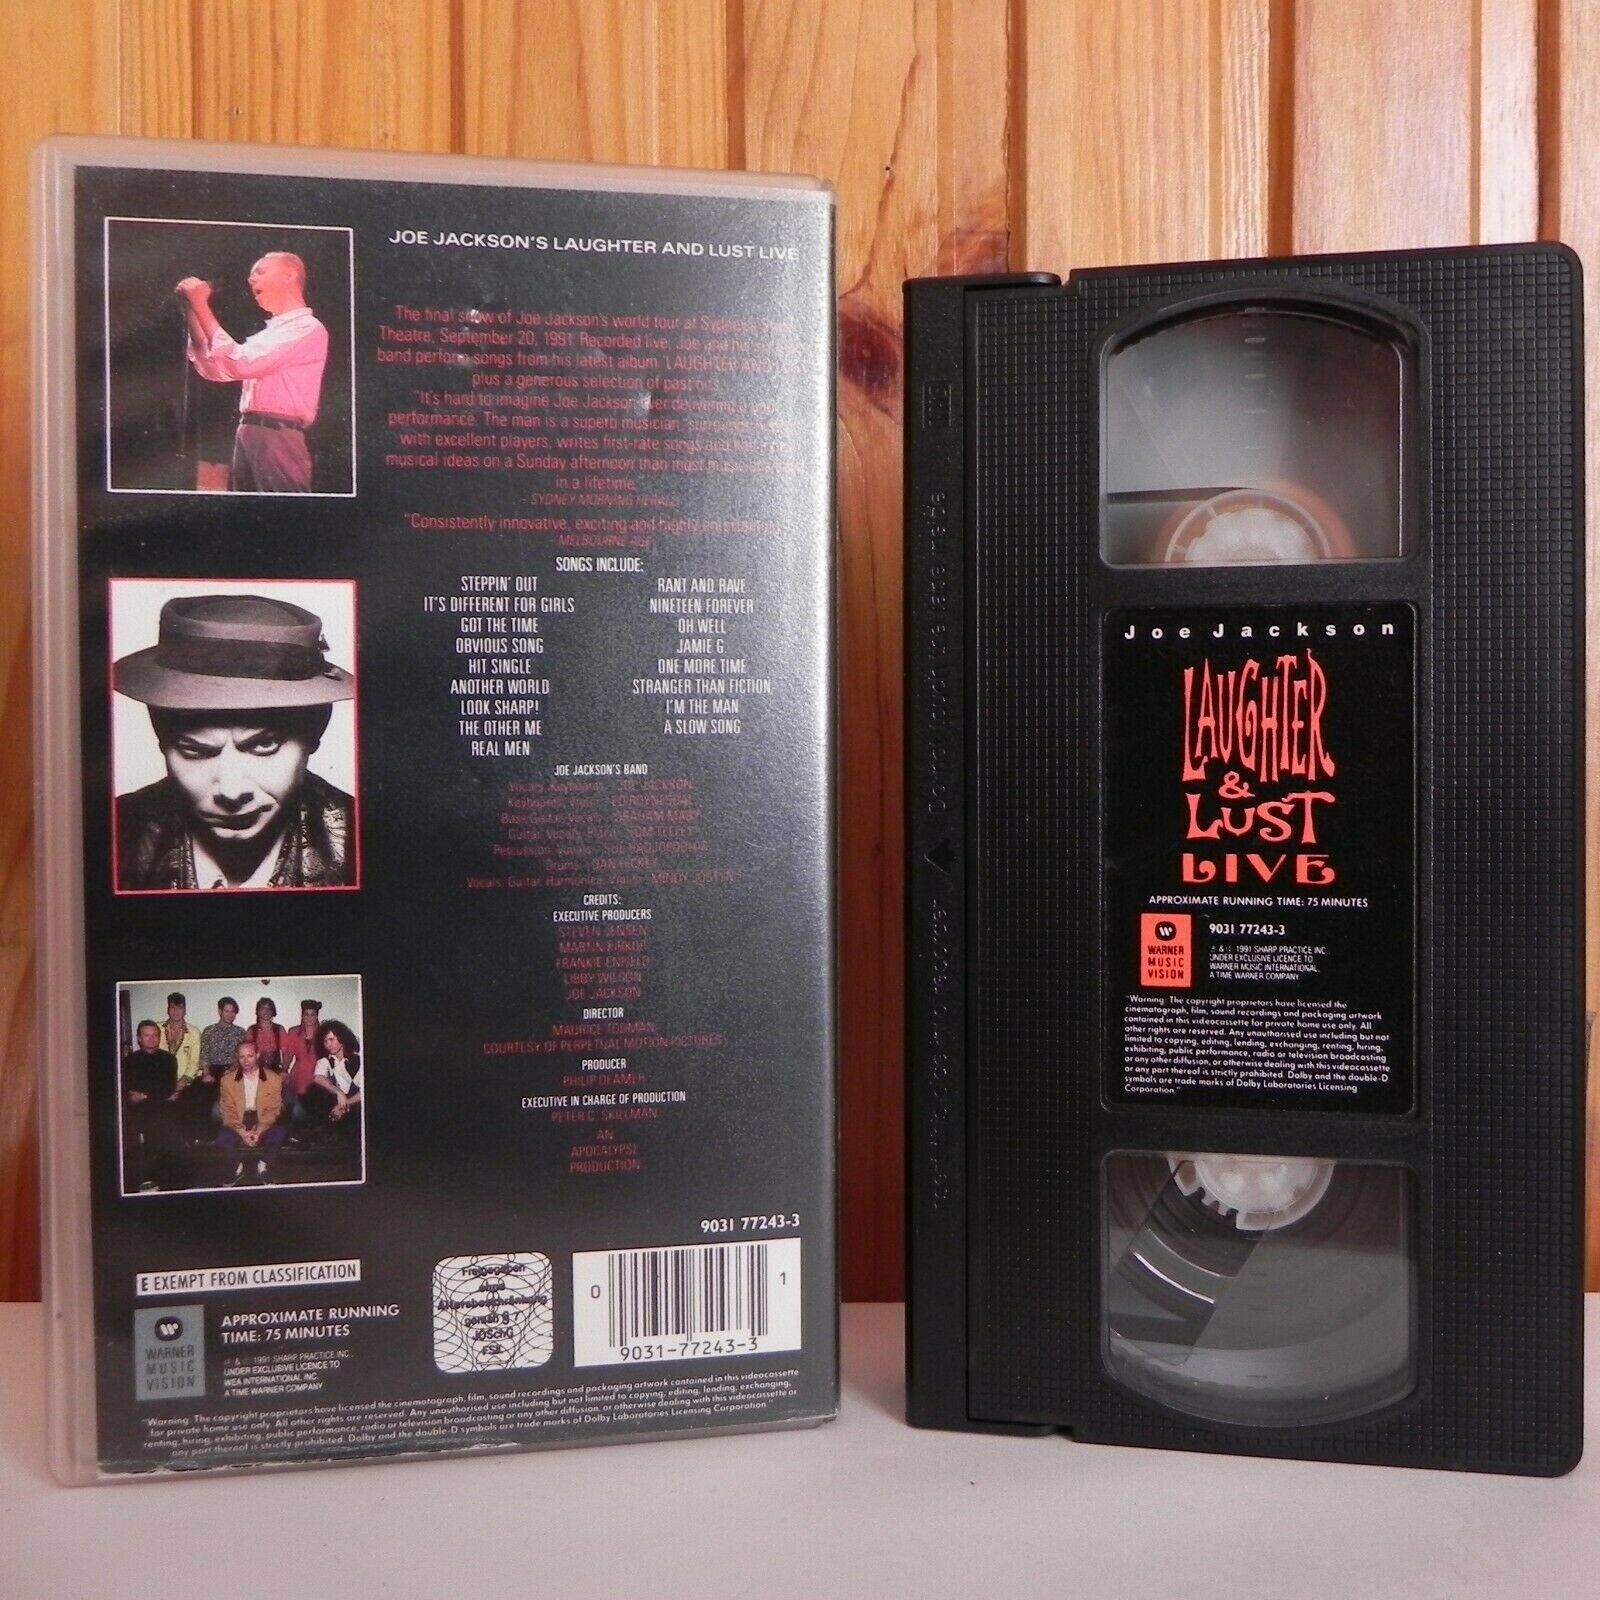 Joe Jackson: Laughter And Lust Live - Sydney - 20 September 1991 - Pal VHS-